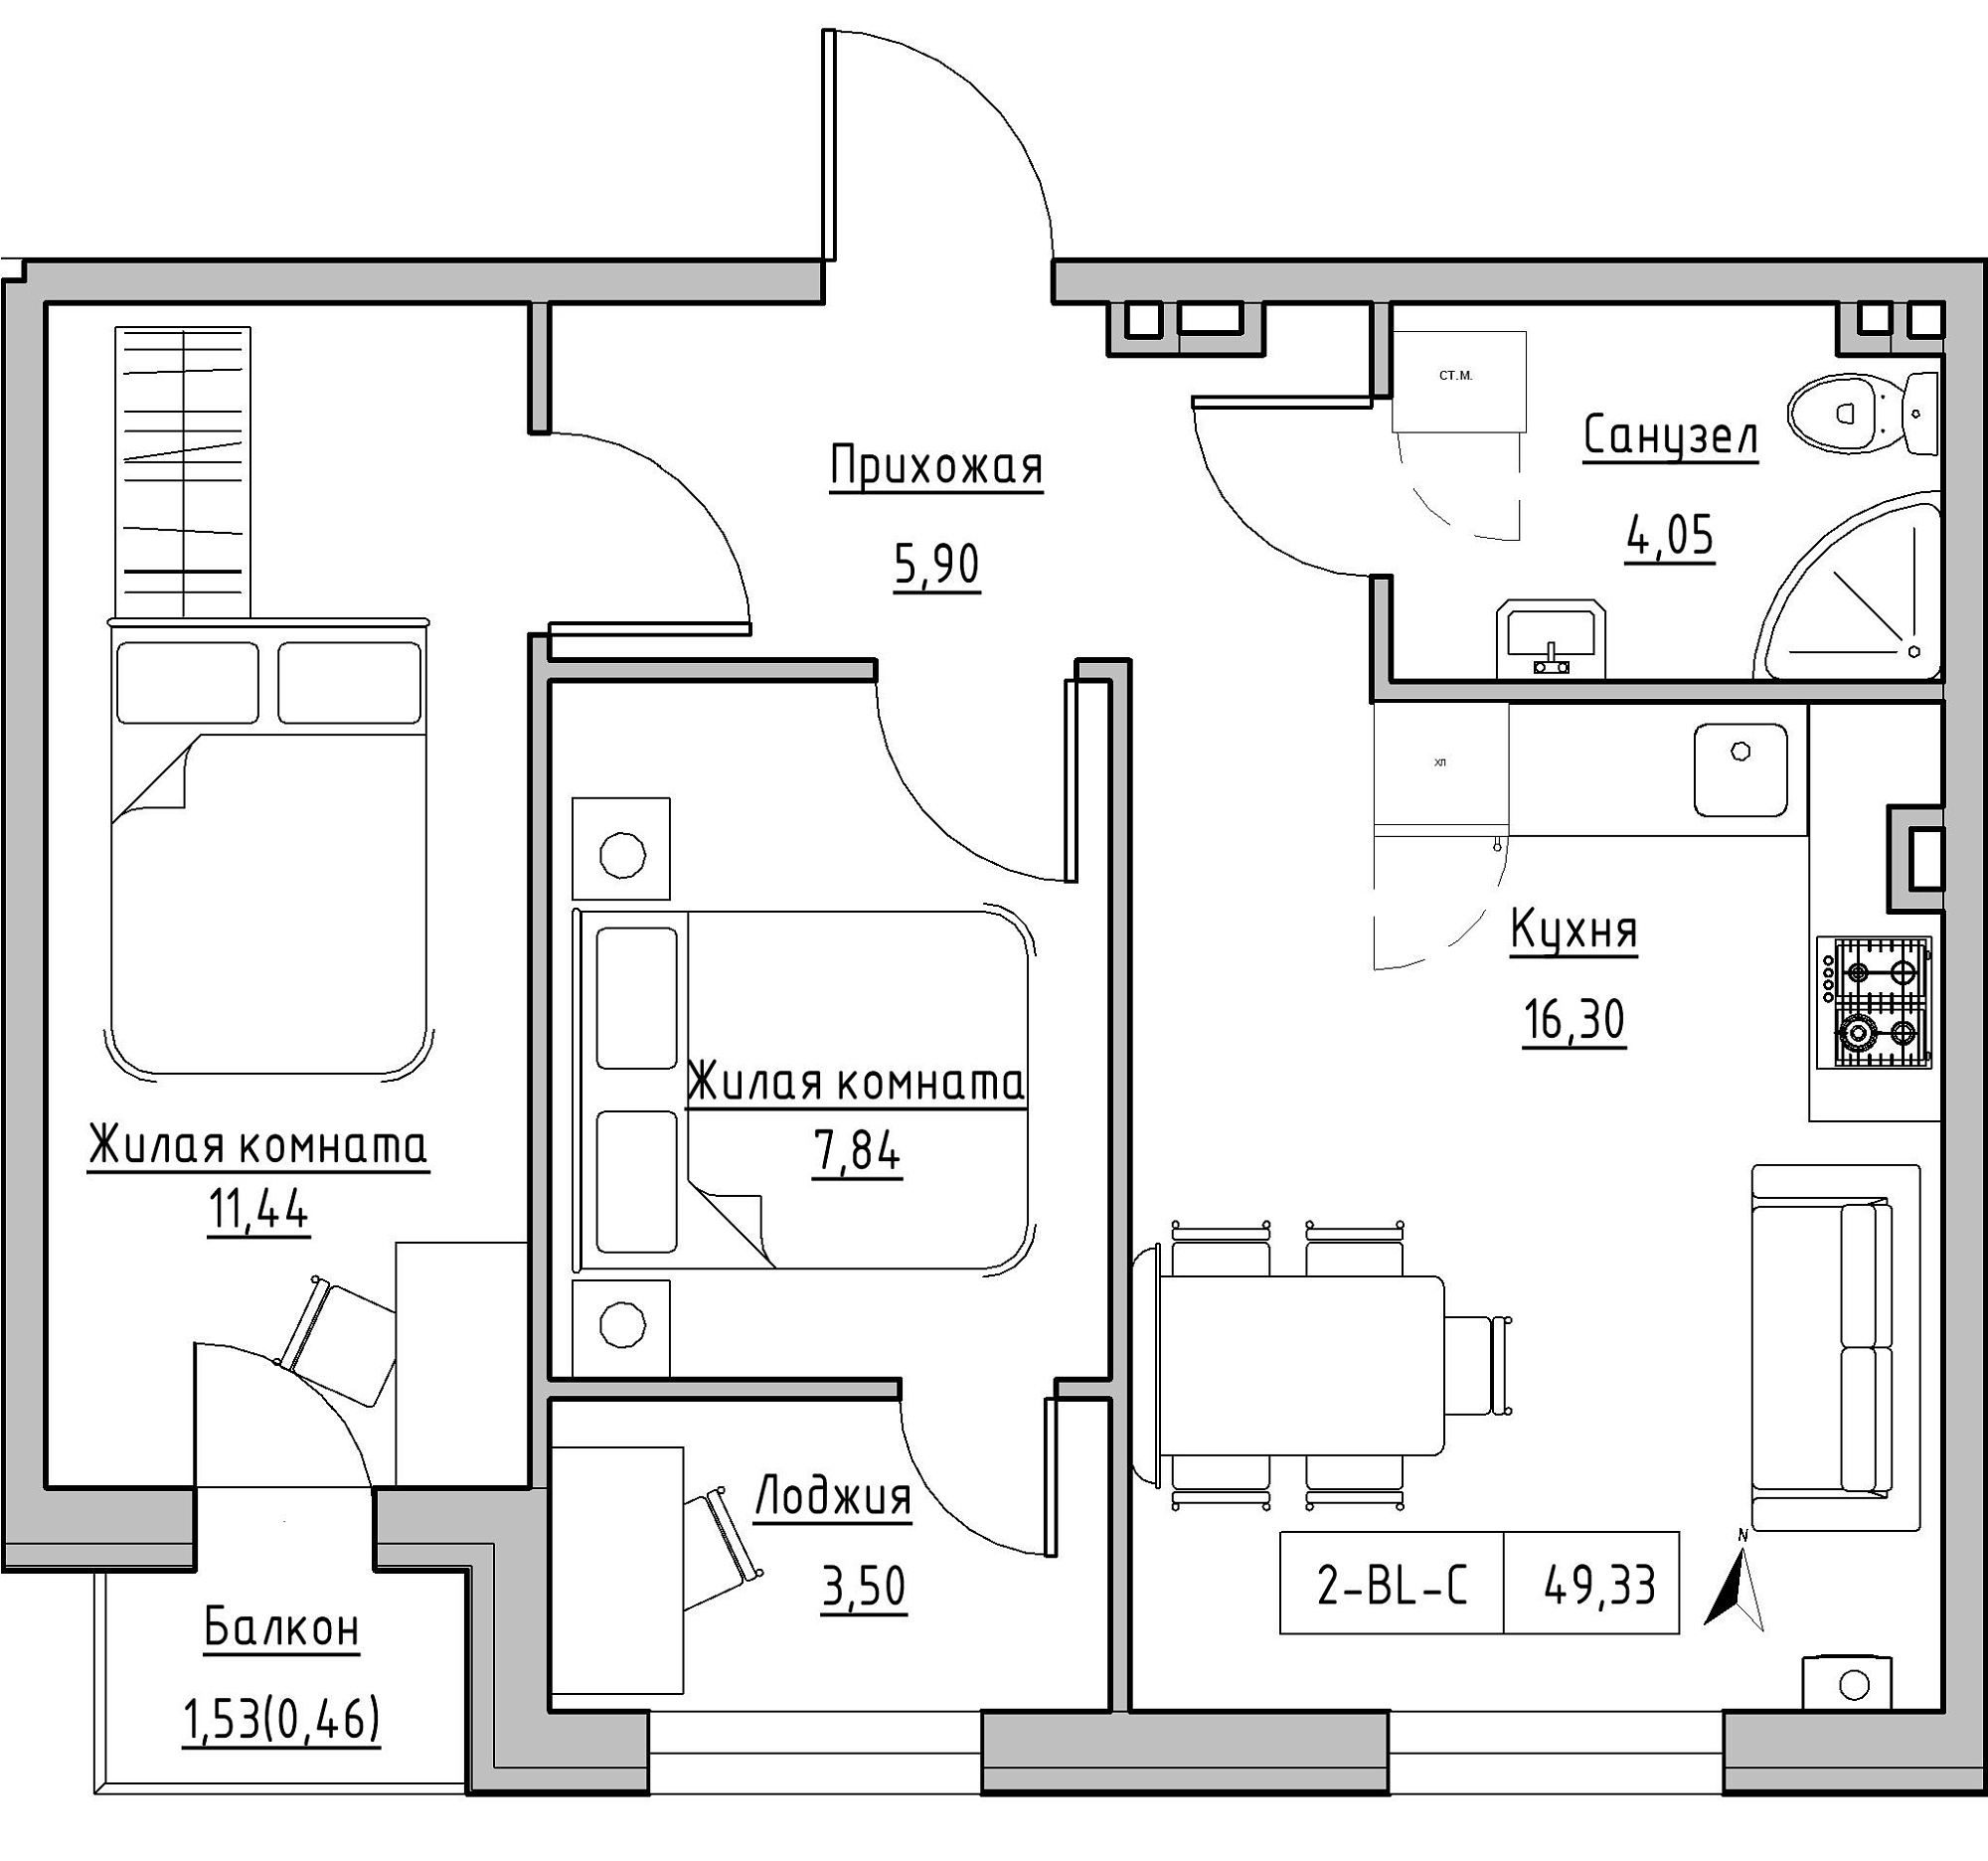 Планування 2-к квартира площею 49.33м2, KS-024-02/0008.